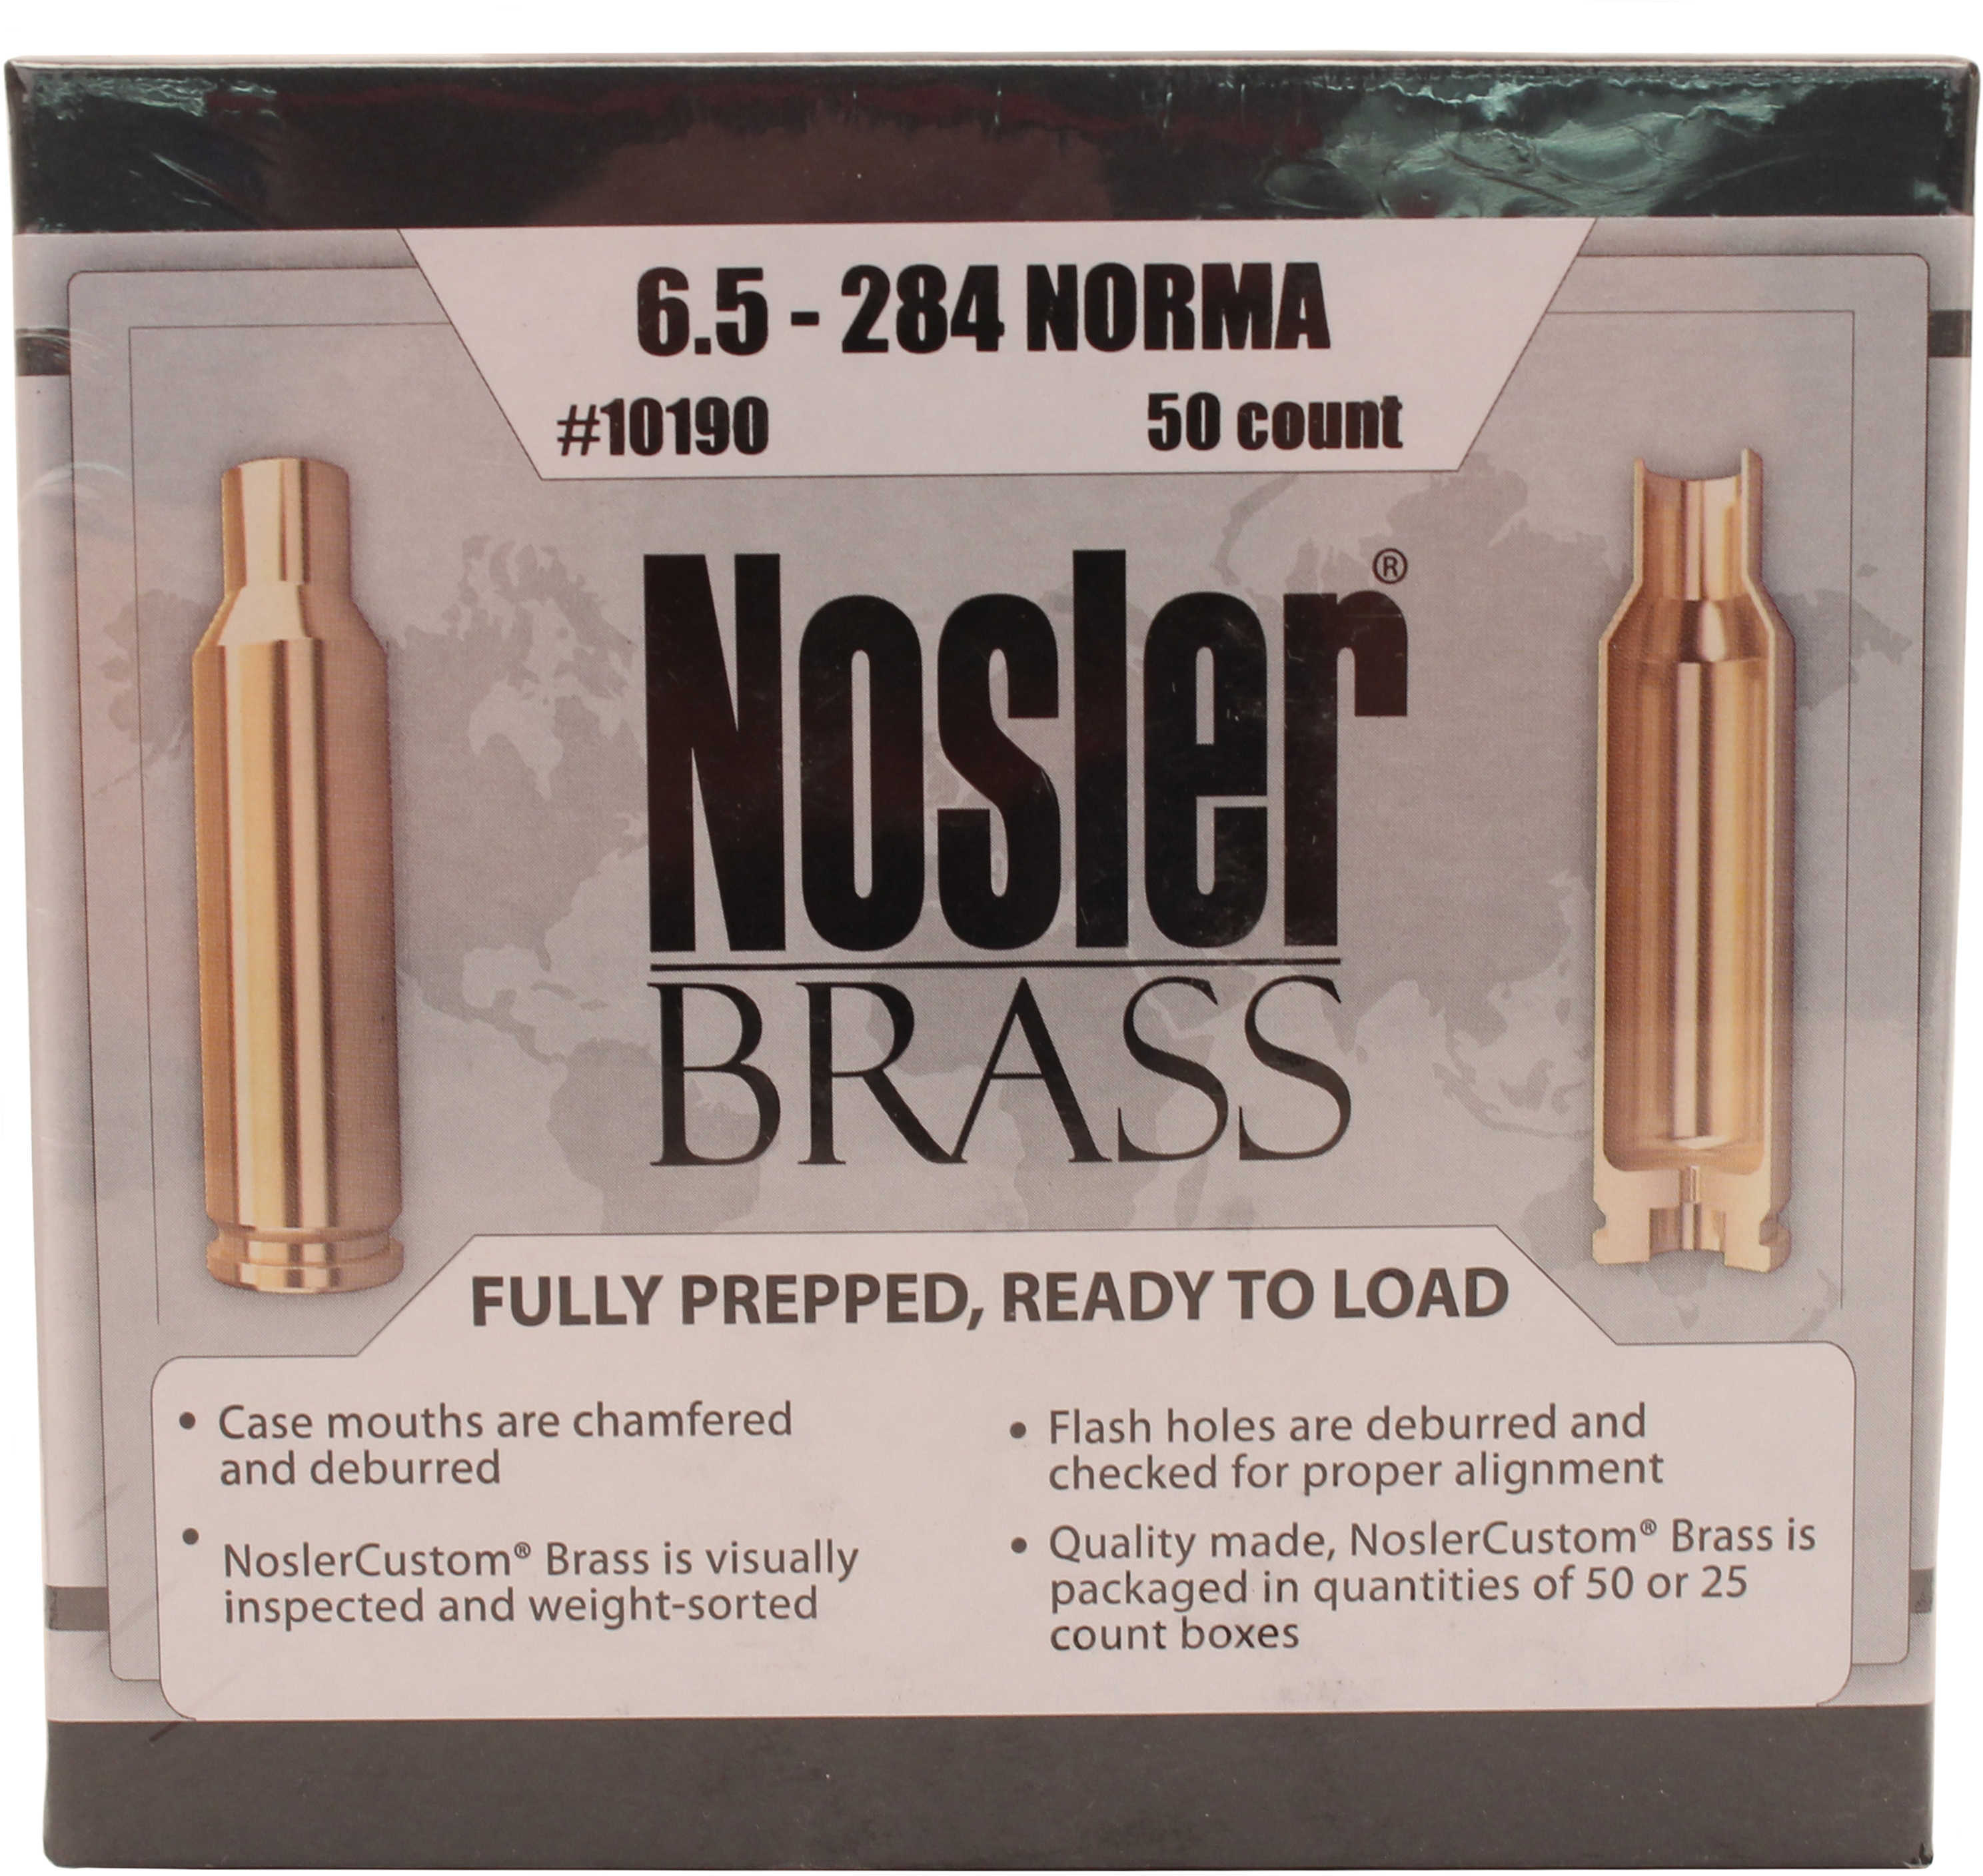 6.5-284 Norma Brass Case